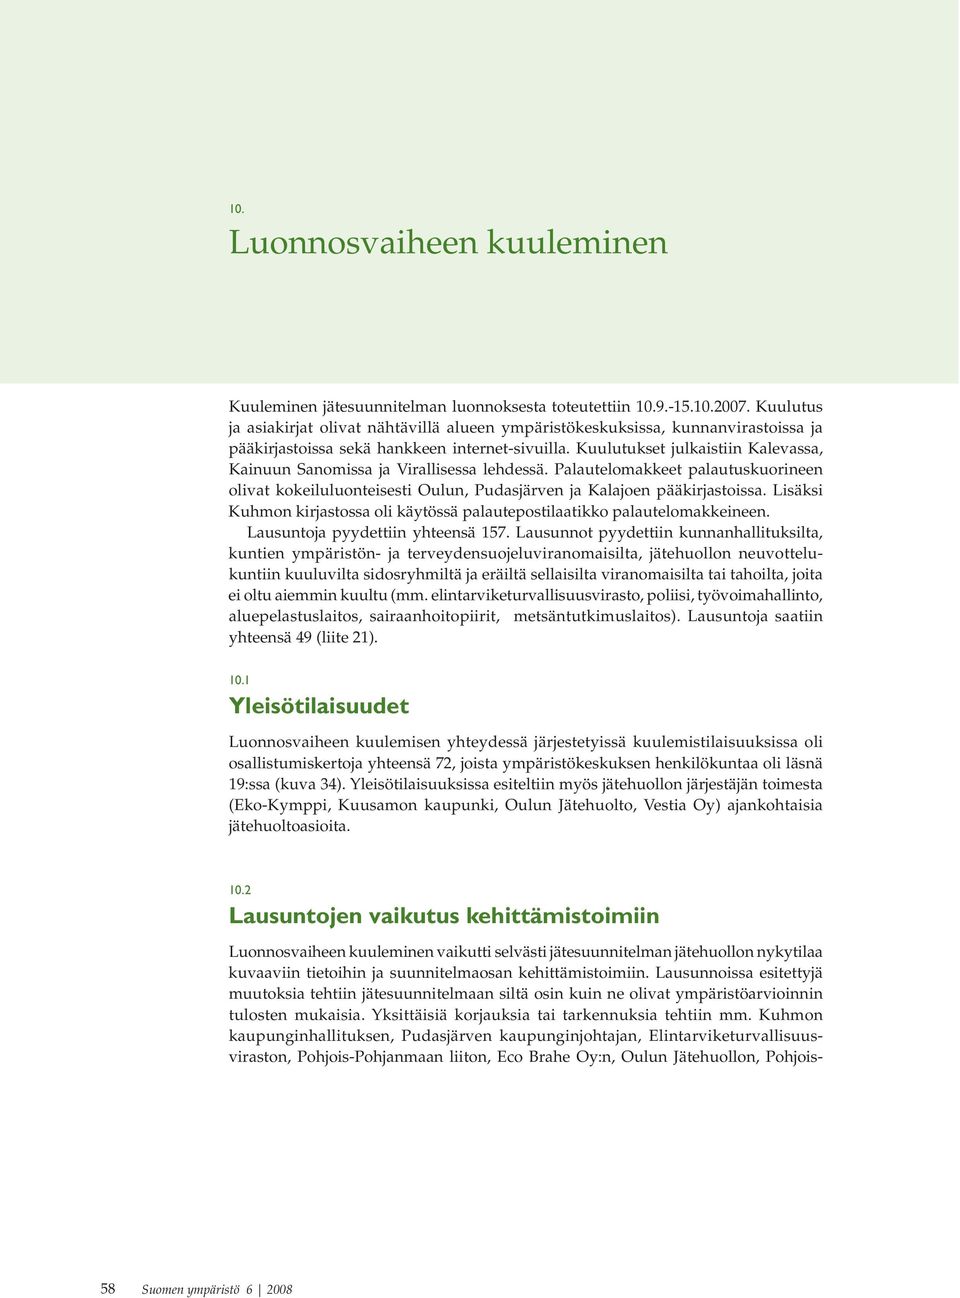 Kuulutukset julkaistiin Kalevassa, Kainuun Sanomissa ja Virallisessa lehdessä. Palautelomakkeet palautuskuorineen olivat kokeiluluonteisesti Oulun, Pudasjärven ja Kalajoen pääkirjastoissa.